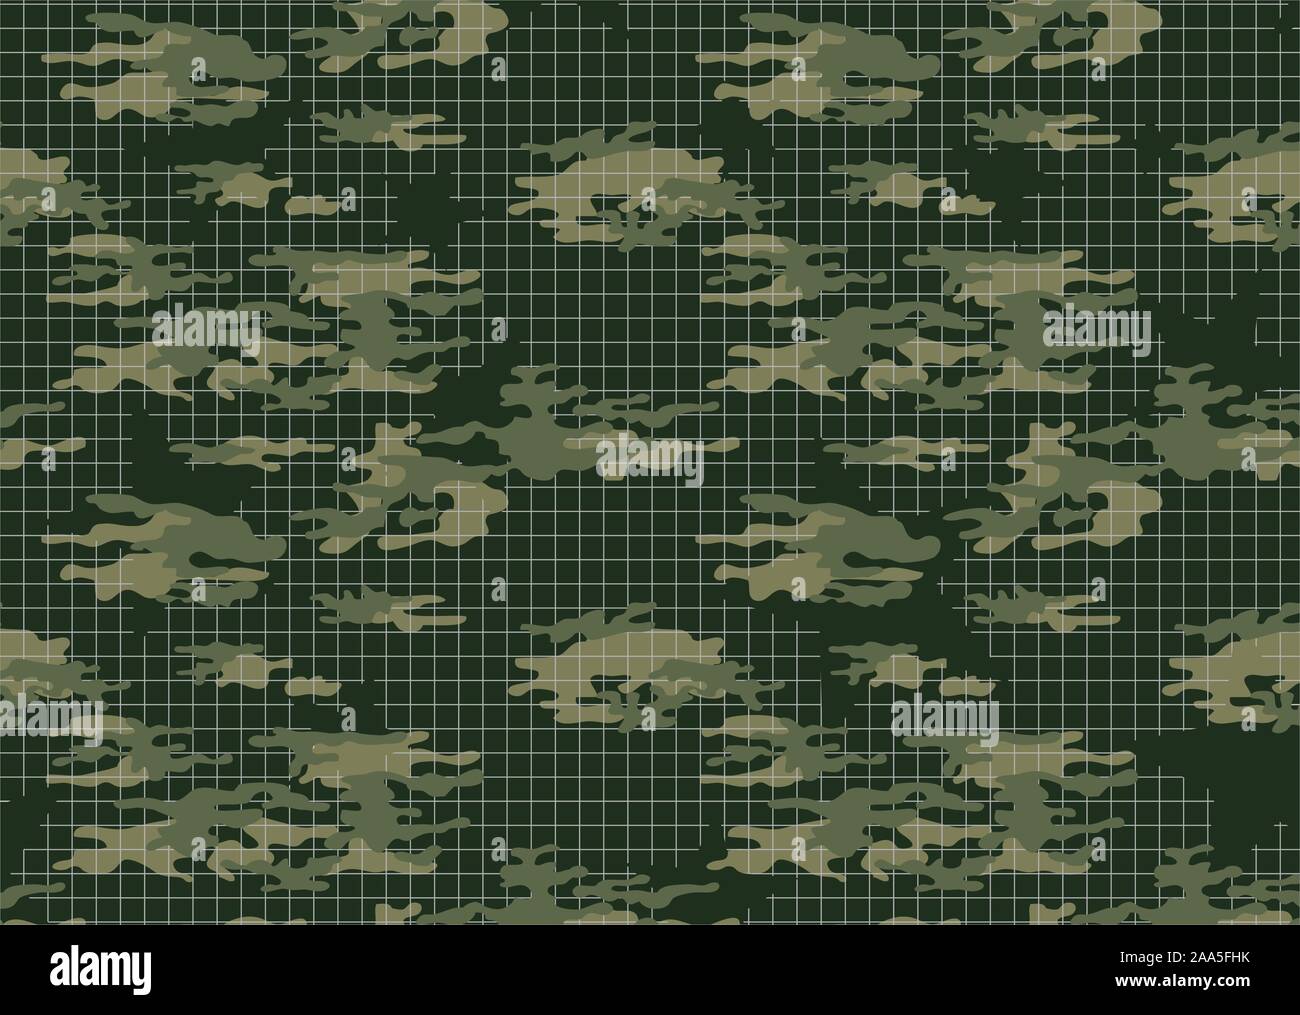 Camouflage pattern army Bekleidung, Soldat einheitlichen Hintergrund, militärische Materialien. - Vektor Stock Vektor